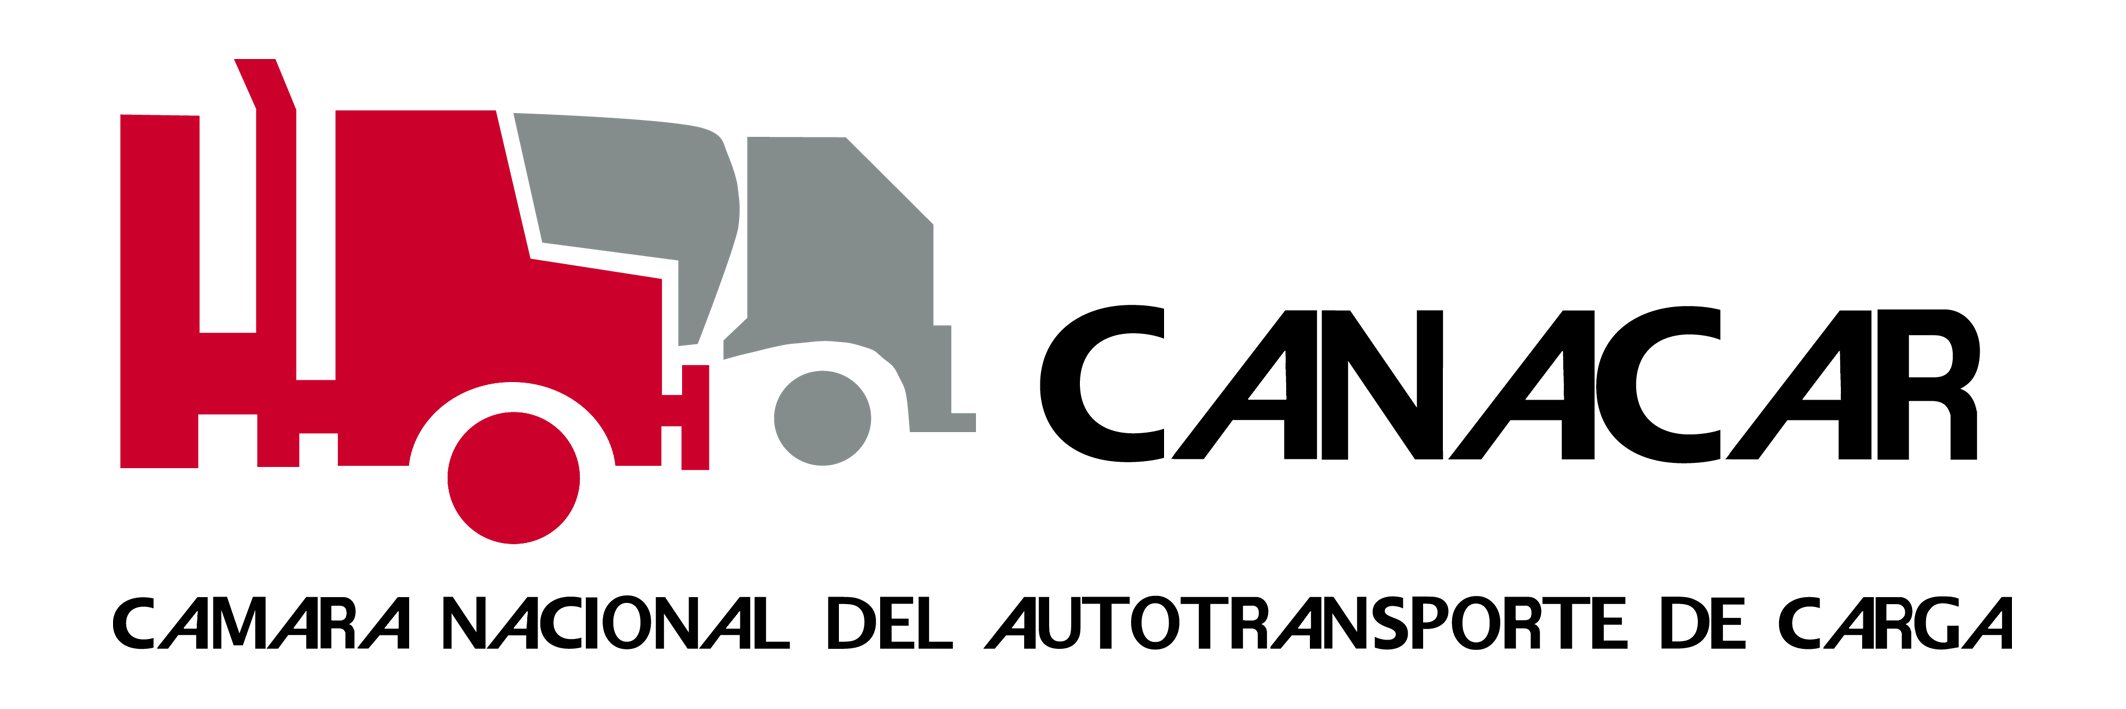 camara nacional de autotransporte Logo photo - 1